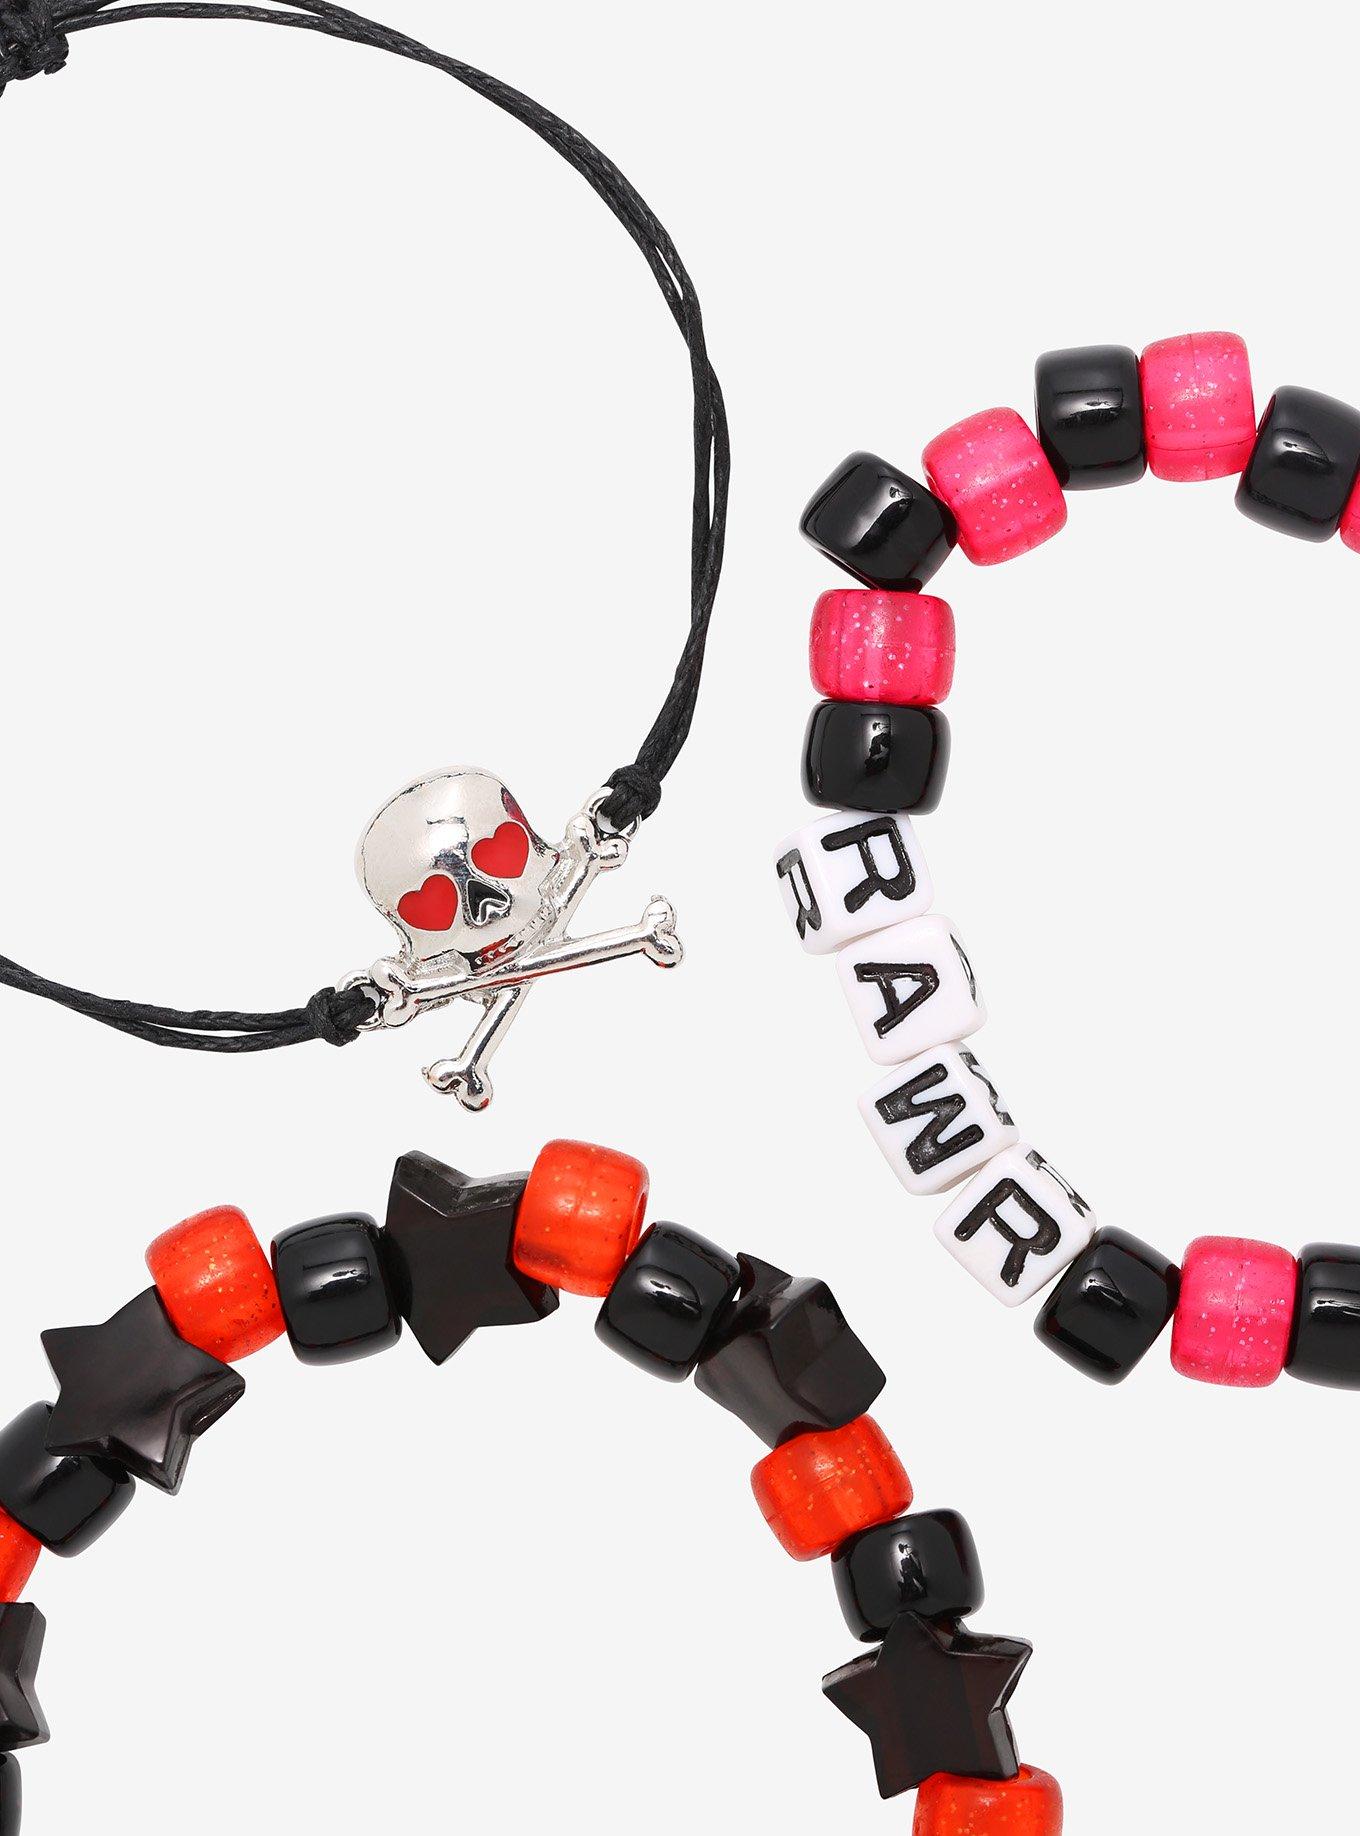 Rue21 5-Pack Beaded Chain Dice Charm Bracelet Set